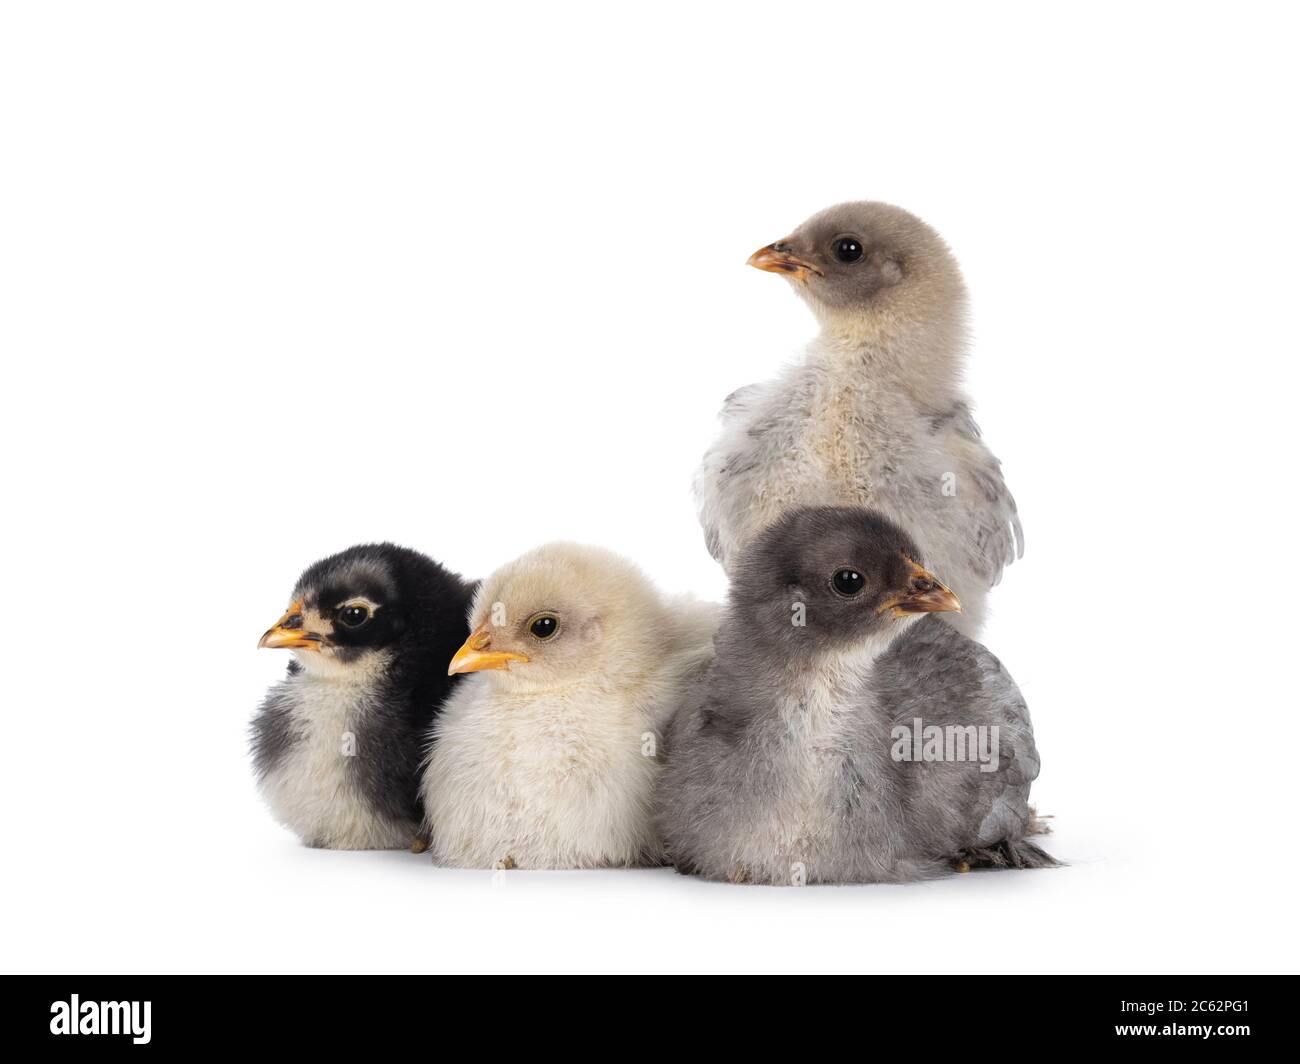 Groupe de 4 poulets Brahma de bébé multicolores, assis ensemble. Isolé sur un fond blanc. Banque D'Images